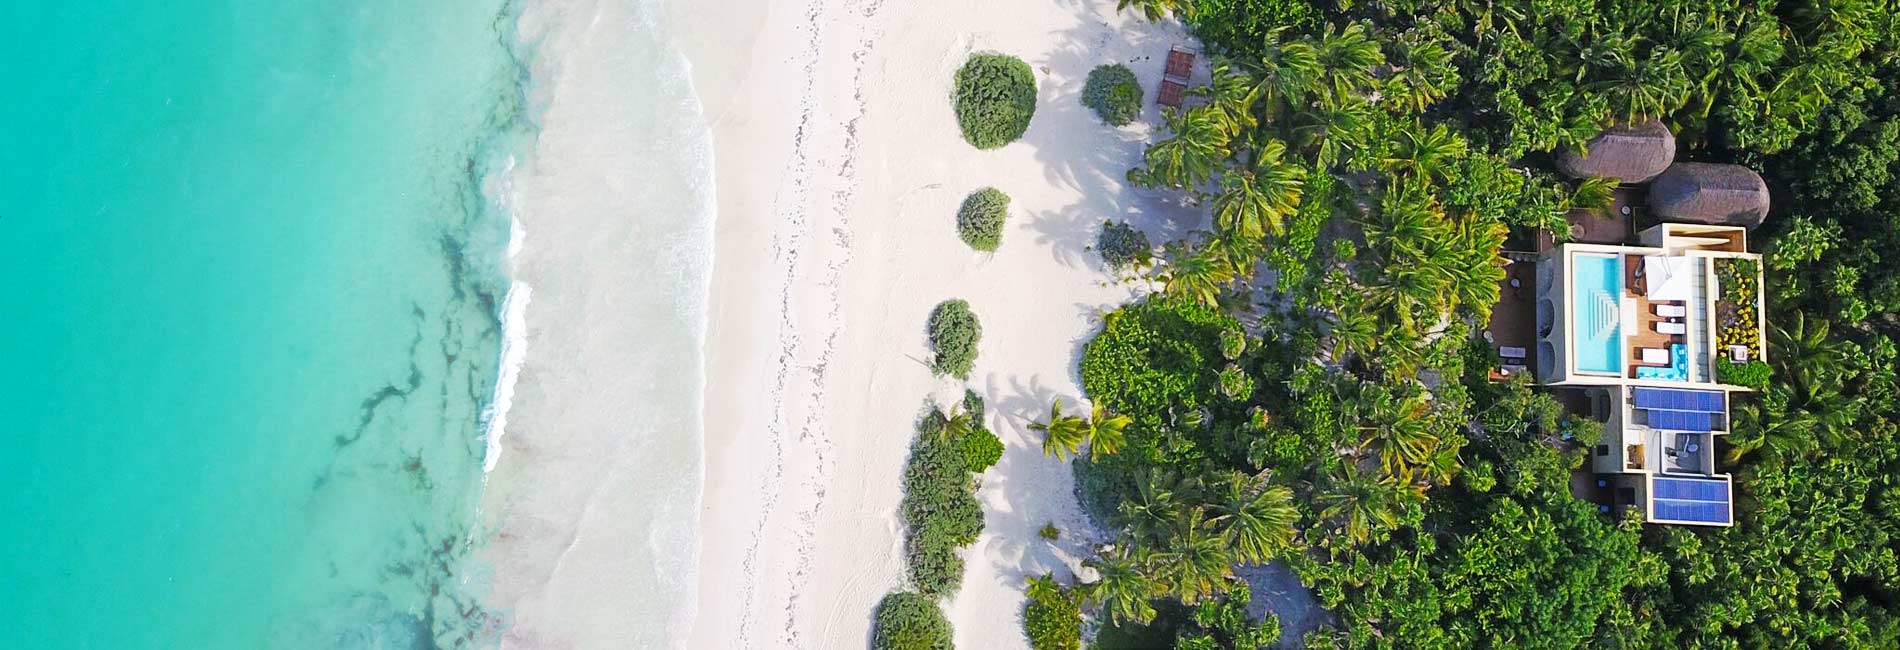 Luxury Villas in Riviera Maya Tulum